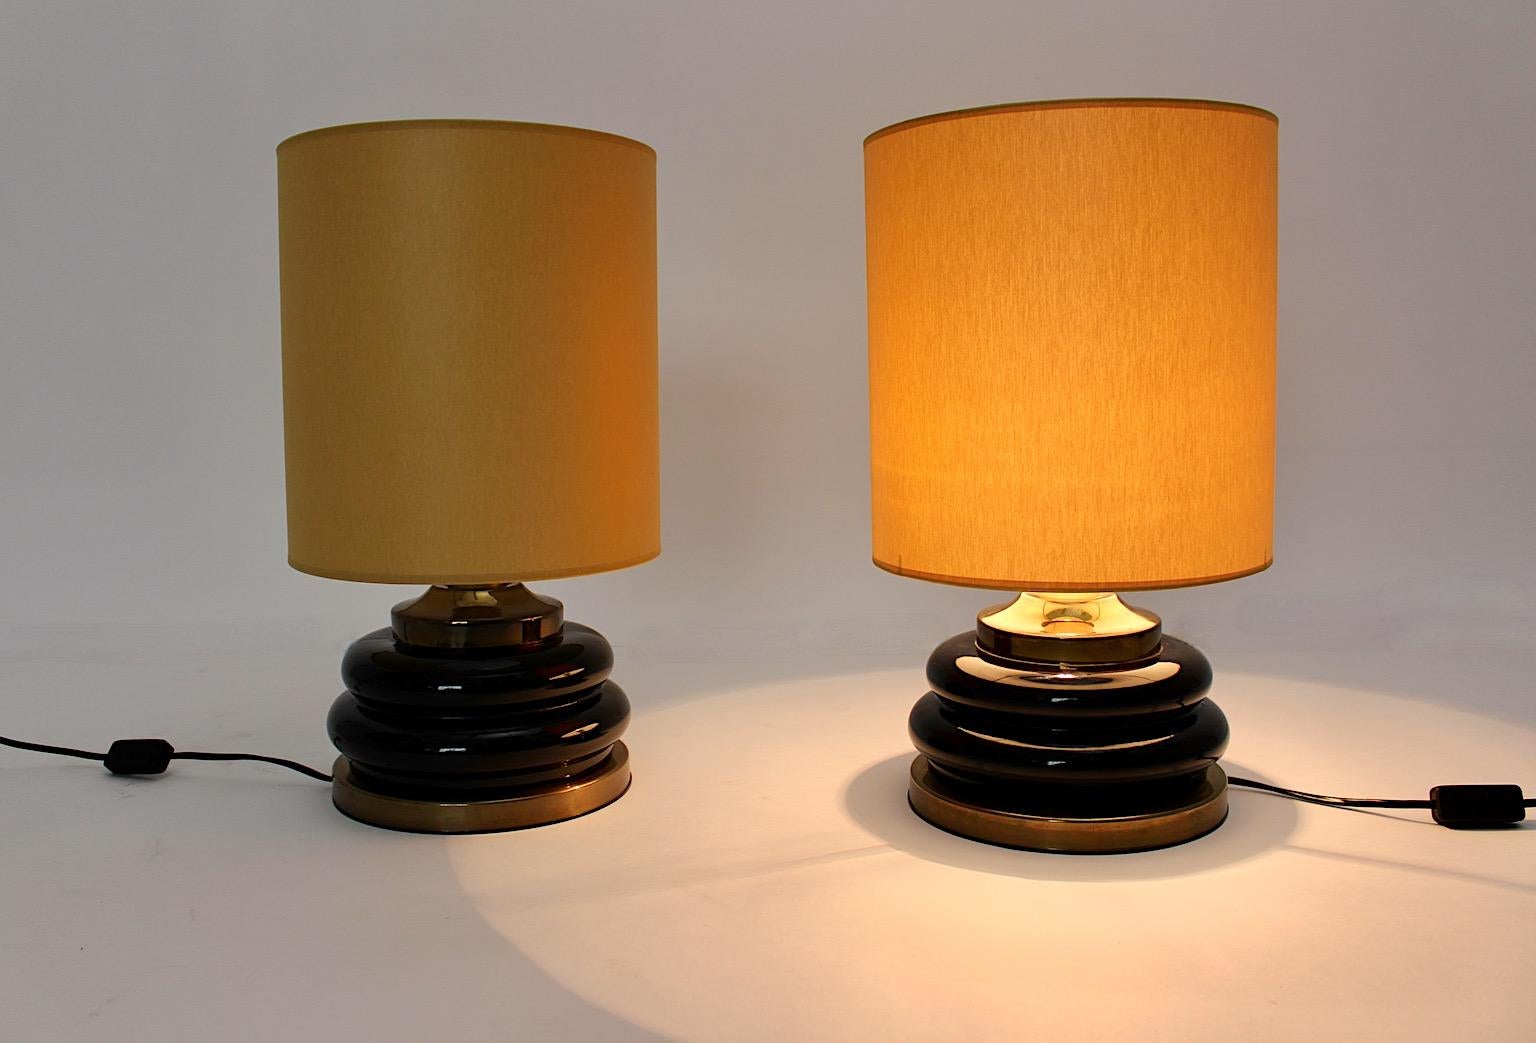 Modernist vintage Tischlampen Duo Paar aus braunem und goldenem Glas, das entworfen und hergestellt wurde Italien, 1970er Jahre.
Ein erstaunliches Paar Tischlampen mit abgerundeten Kanten am Glassockel mit Messing- und Kunststoffdetails geben dem